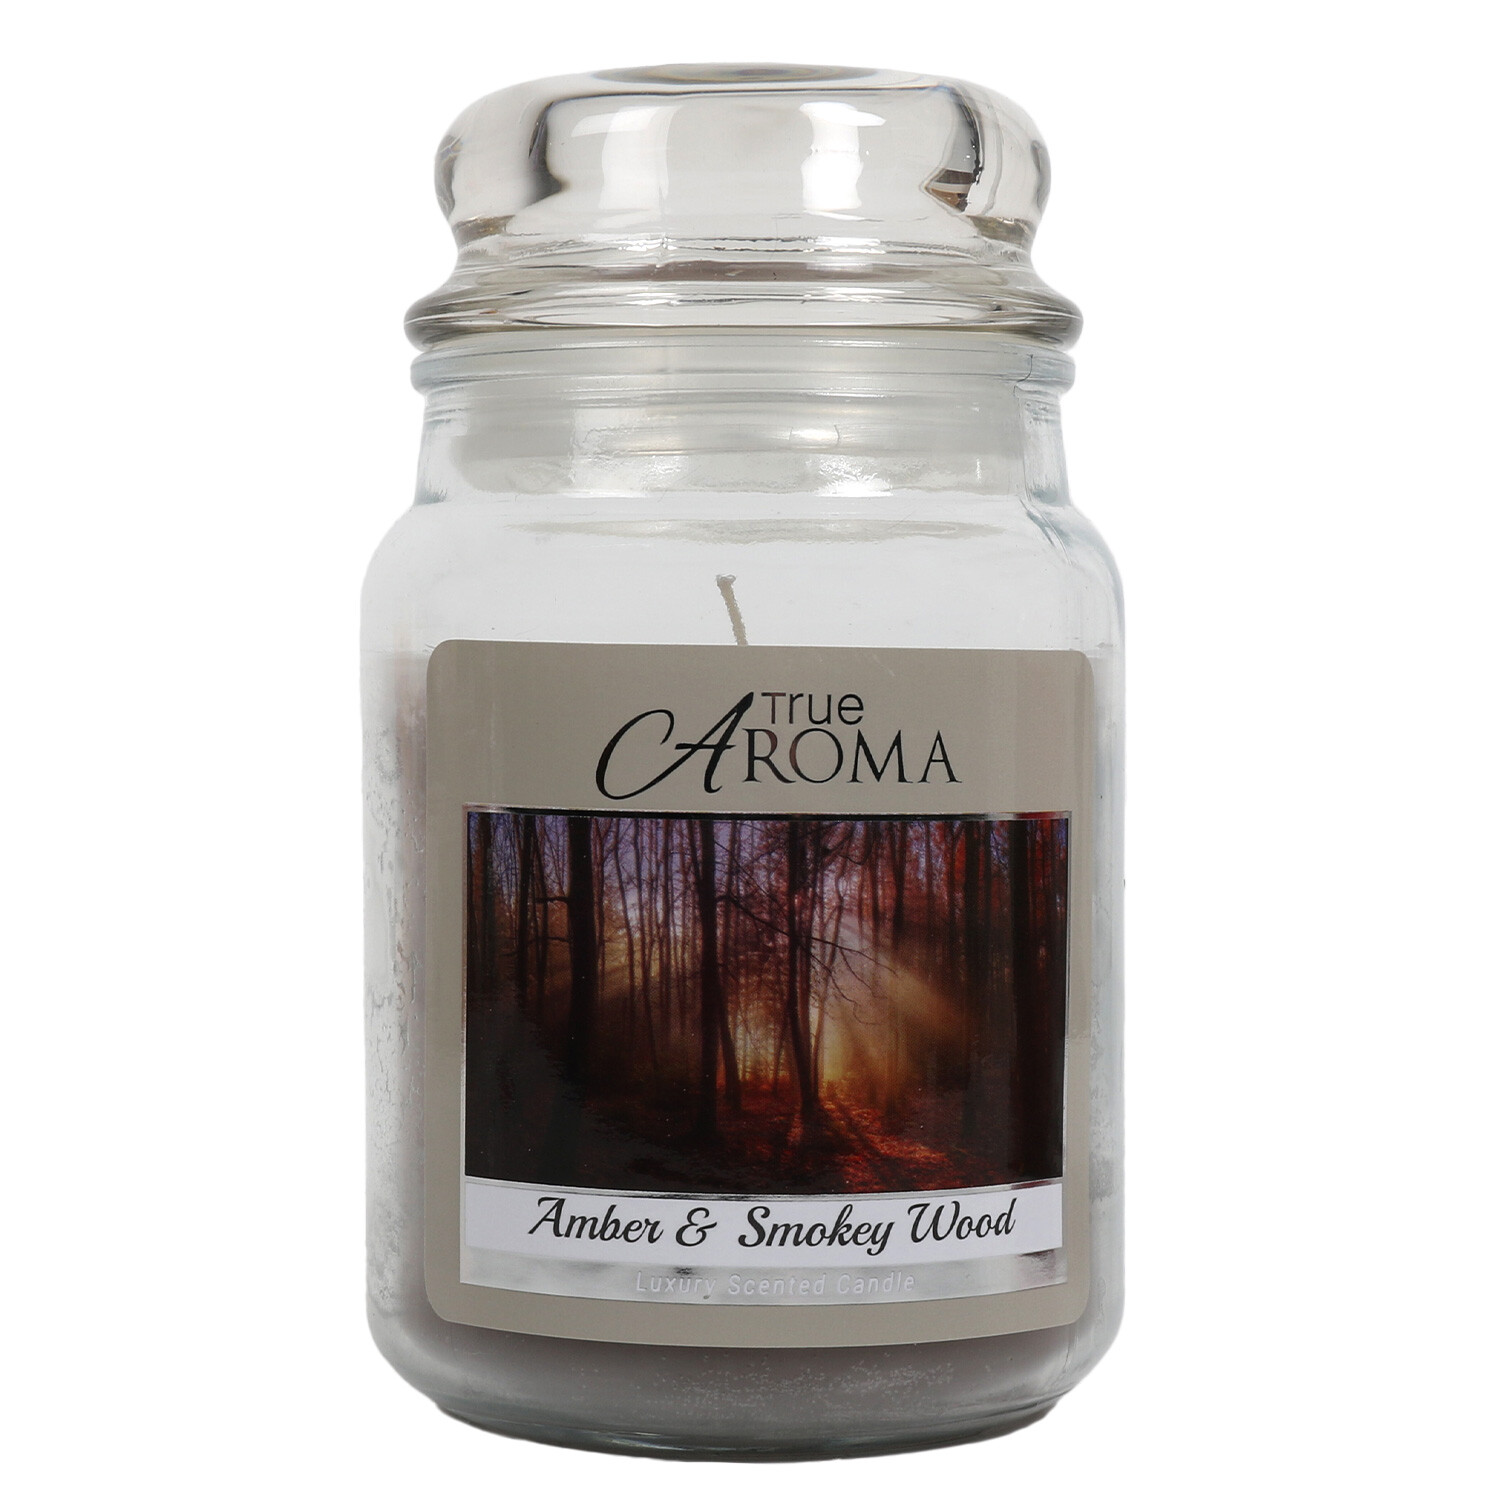 Amber & Smokey Wood Large Mason Jar Candle - Grey Image